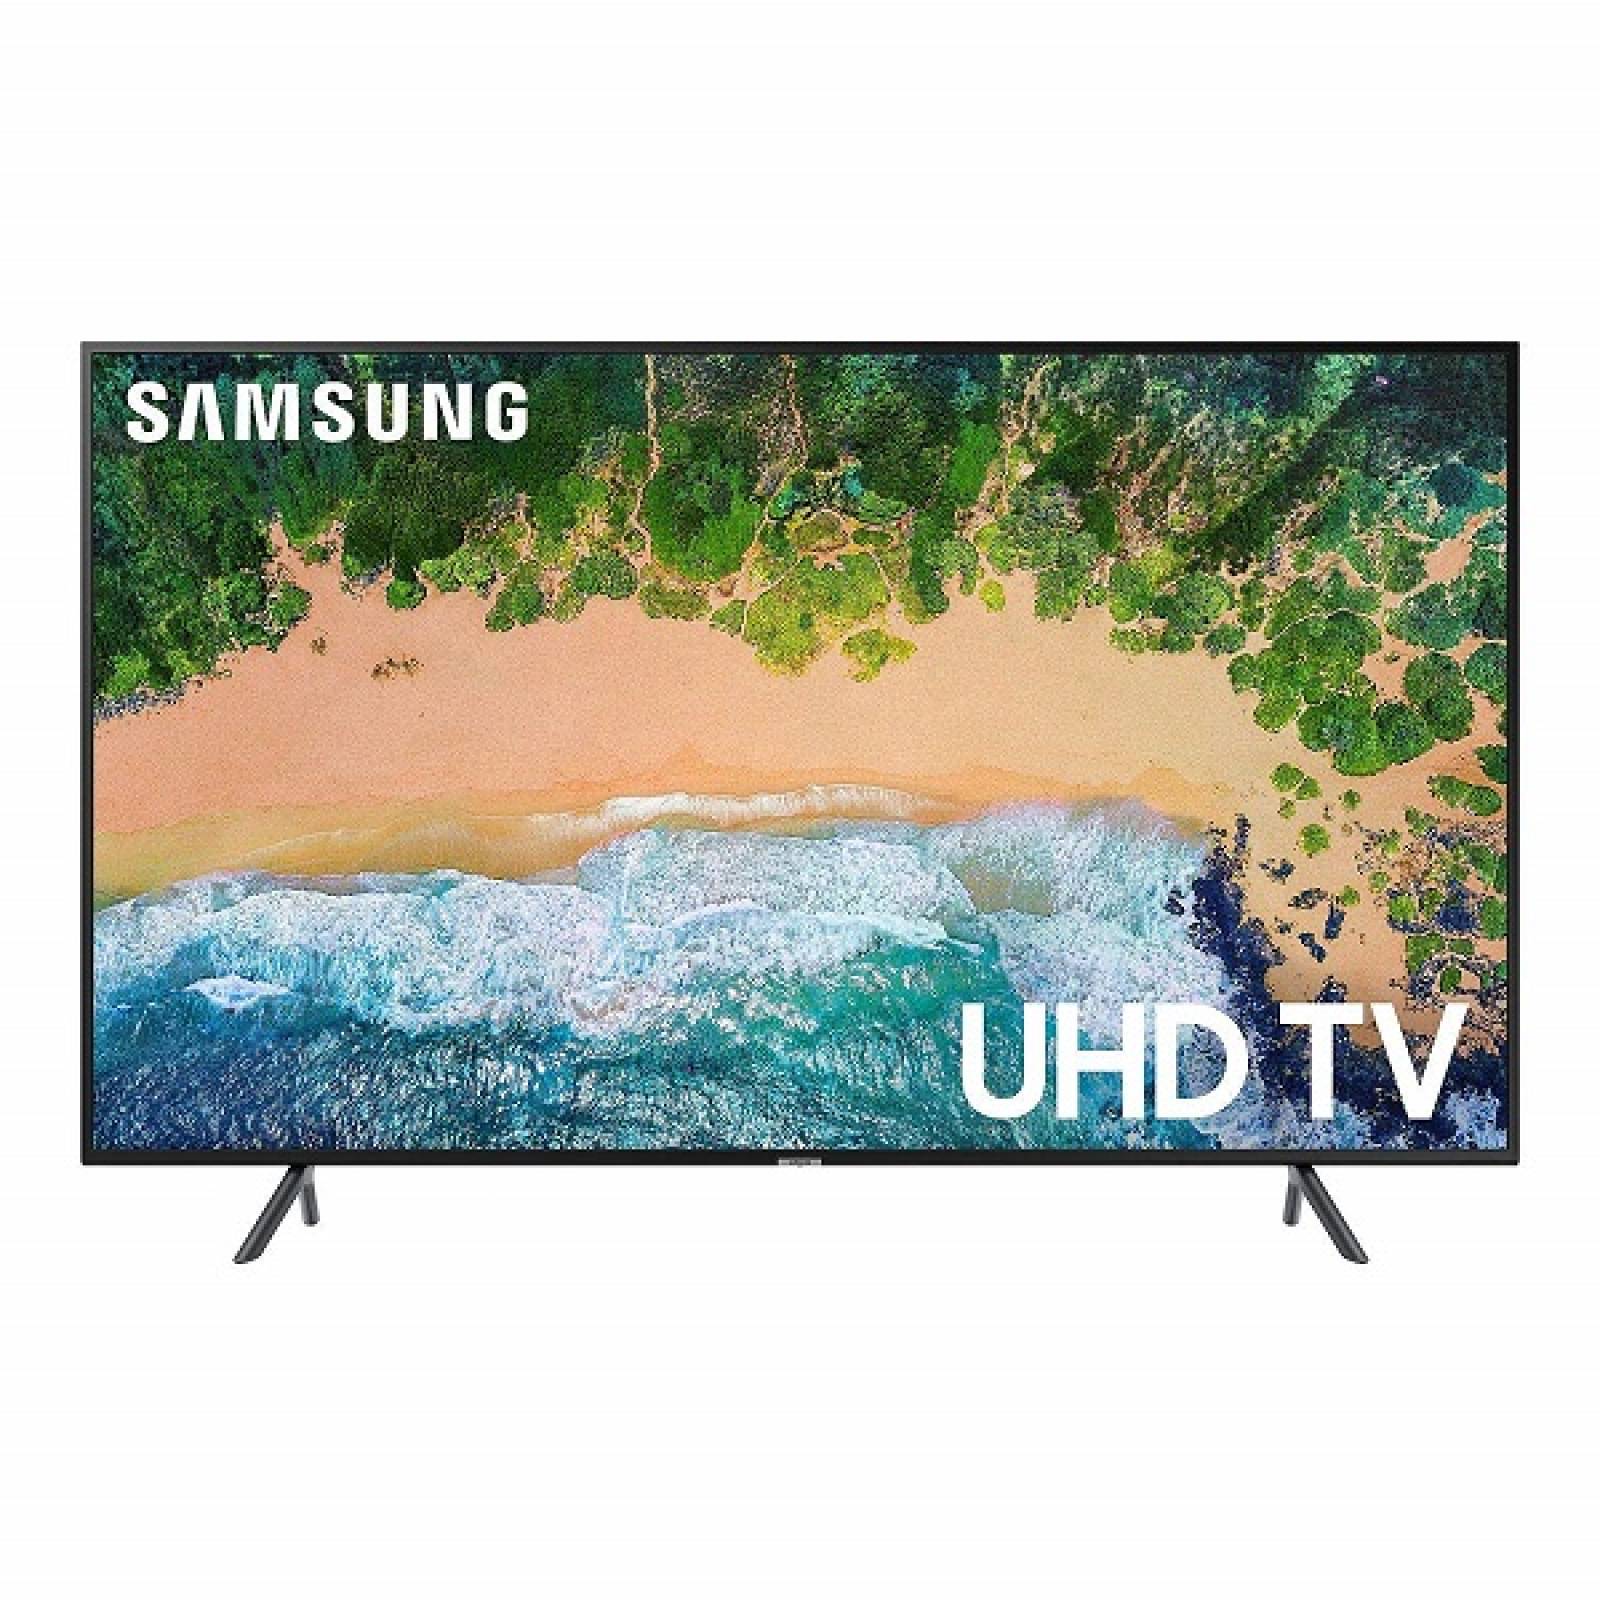 Smart TV 58 Samsung LED 4K UHD HDR USB HDMI UN58NU710DFXZA - Reacondicionado